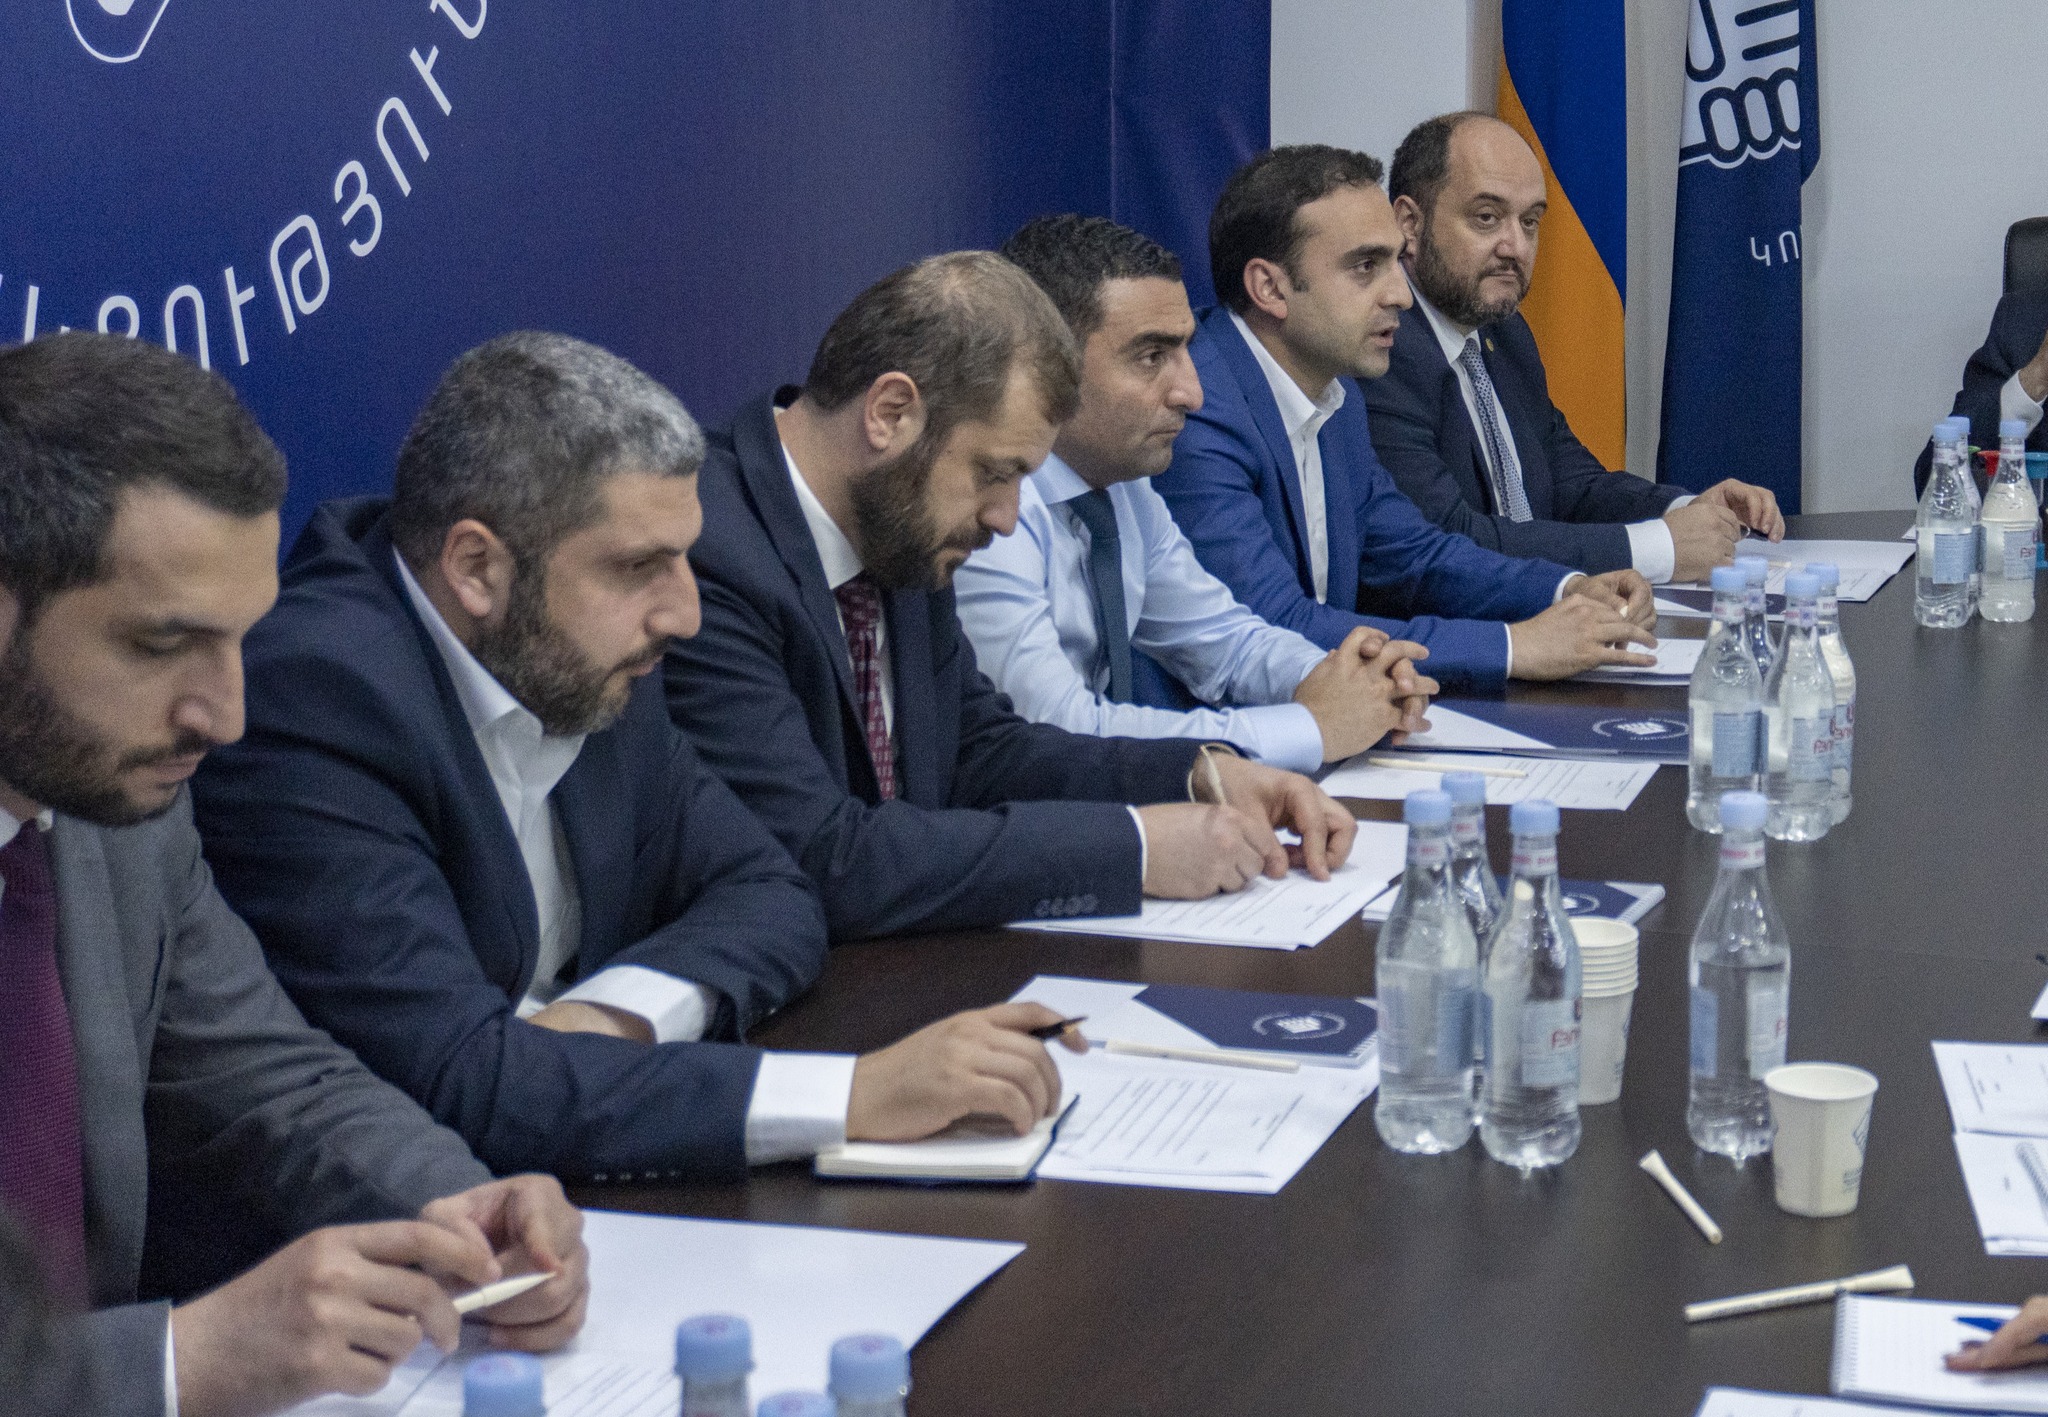 “Гражданский договор” примет участие в выборах в совет старейшин Еревана без альянса